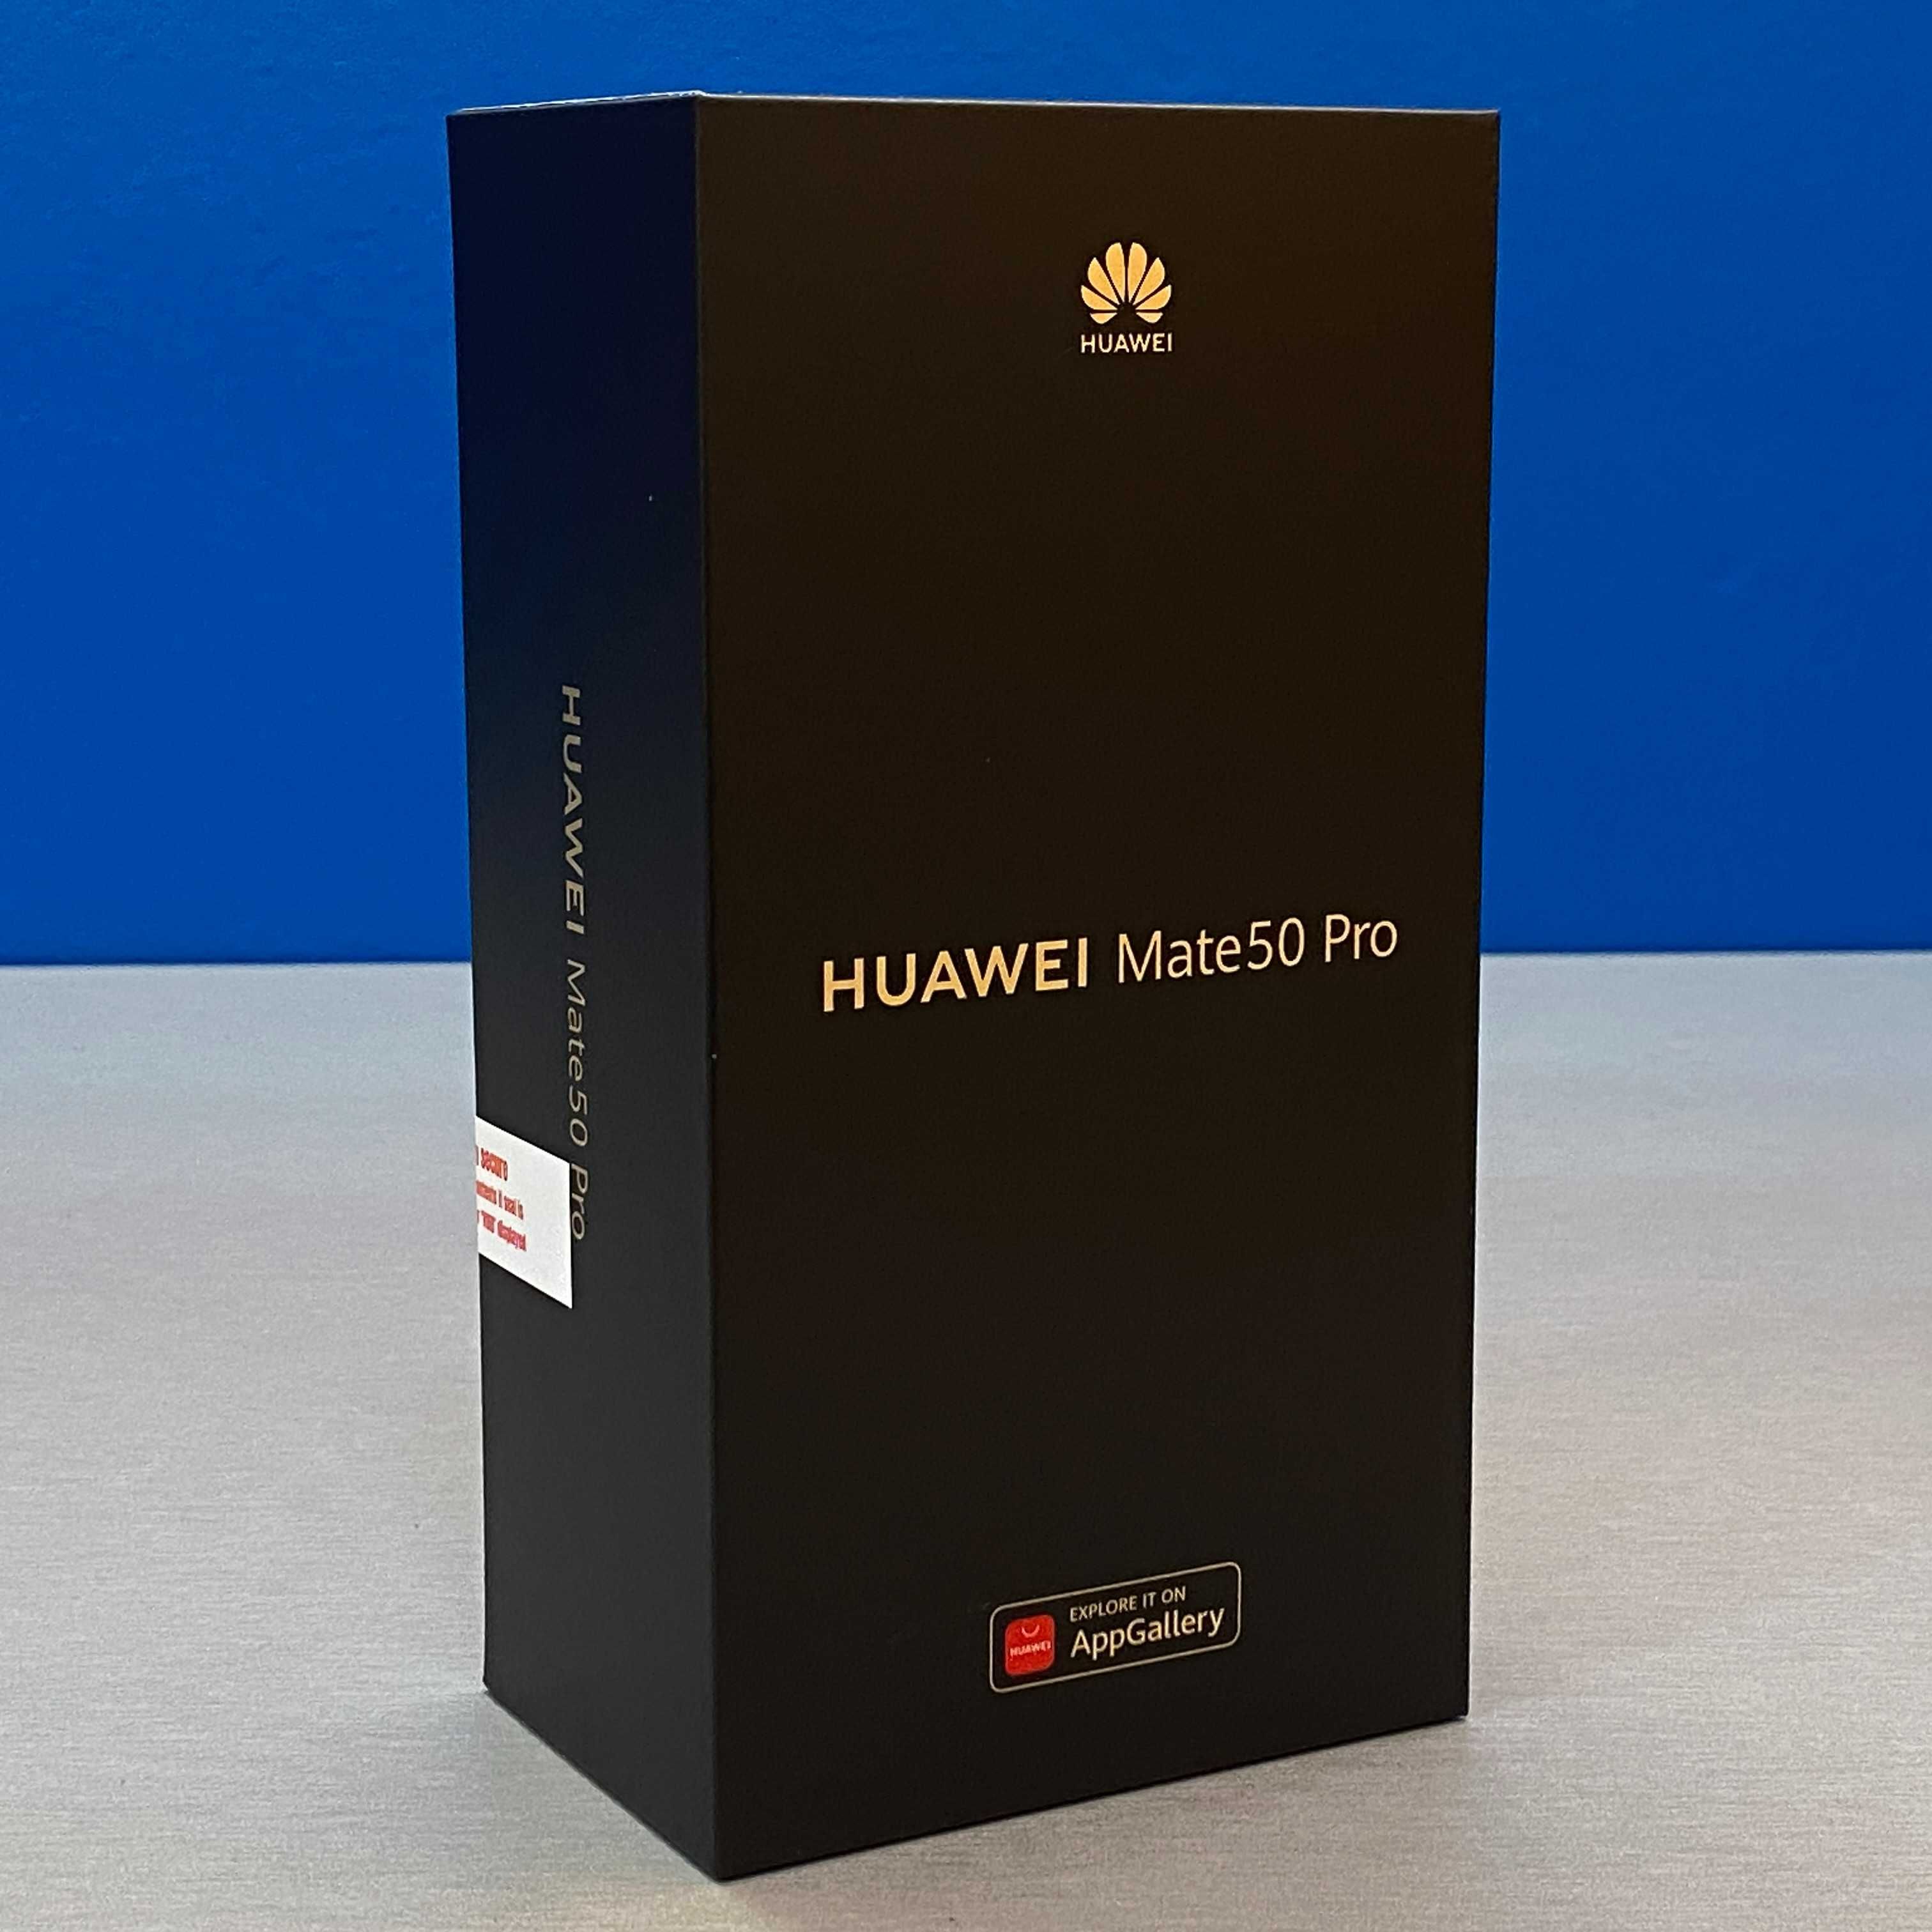 Huawei Mate 50 Pro (8GB/256GB) - Black - SELADO - 3 ANOS DE GARANTIA